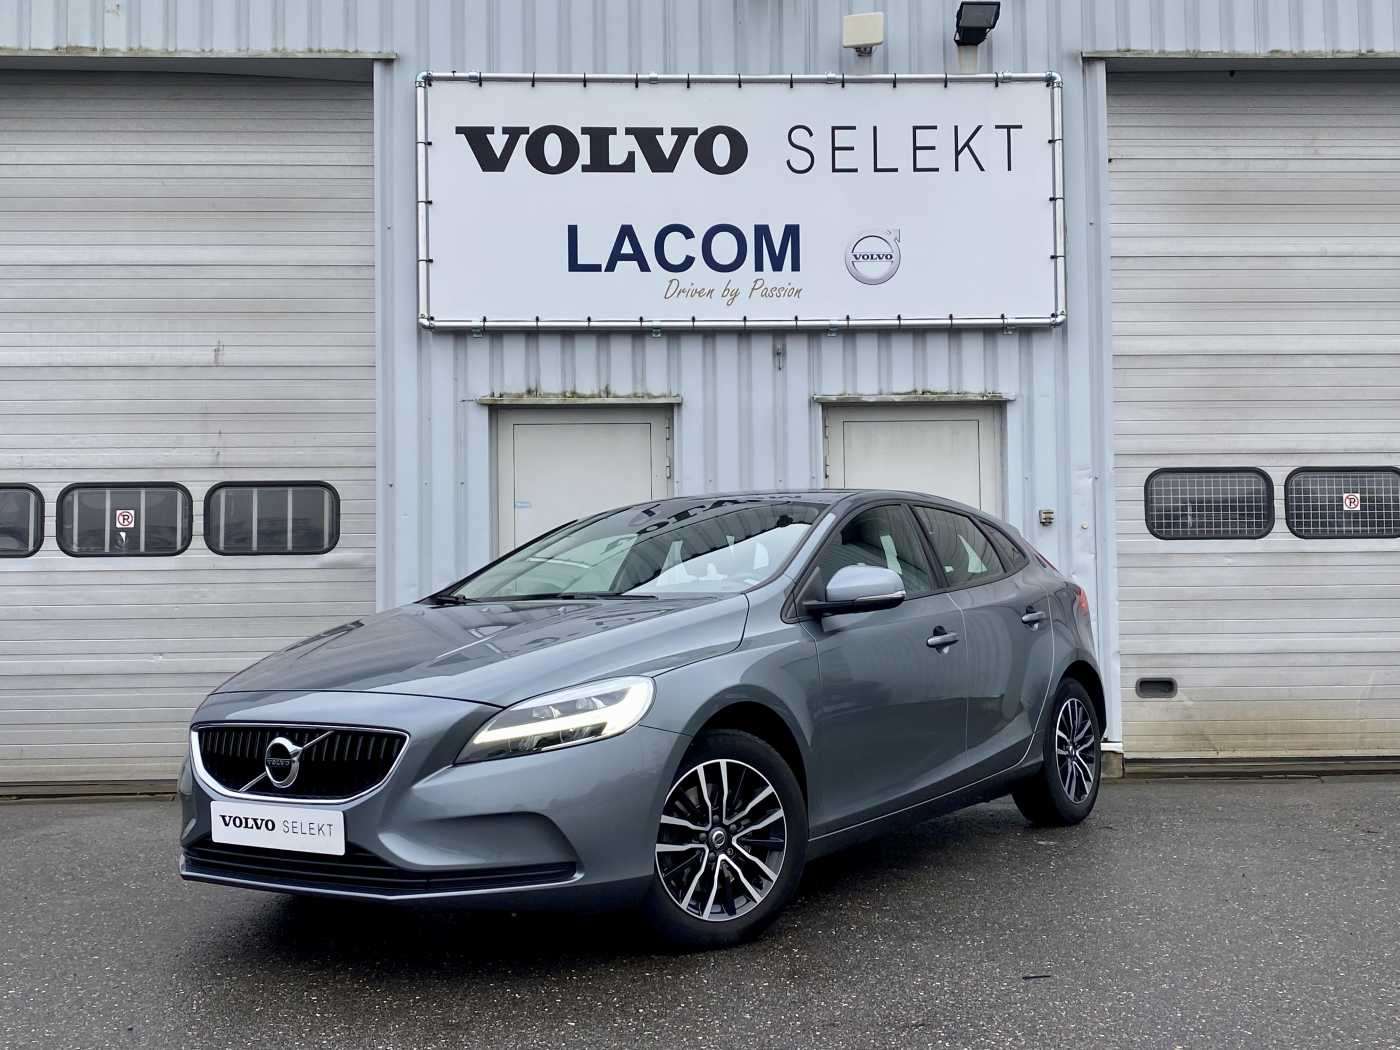 V40 - Volvo Lacom